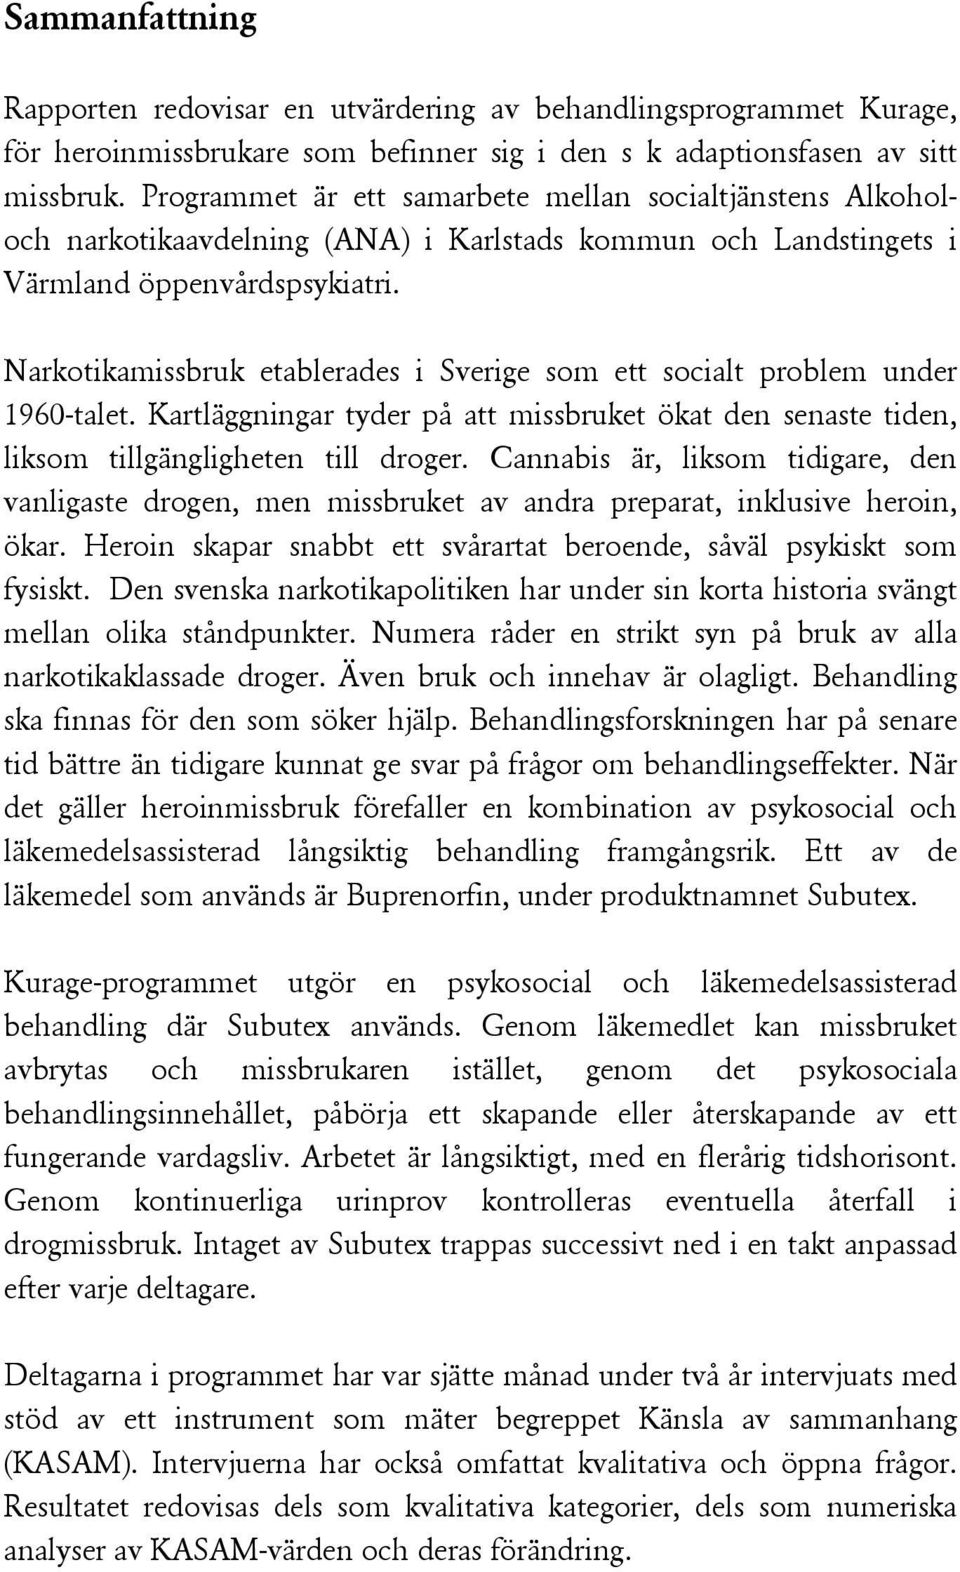 Narkotikamissbruk etablerades i Sverige som ett socialt problem under 1960-talet. Kartläggningar tyder på att missbruket ökat den senaste tiden, liksom tillgängligheten till droger.